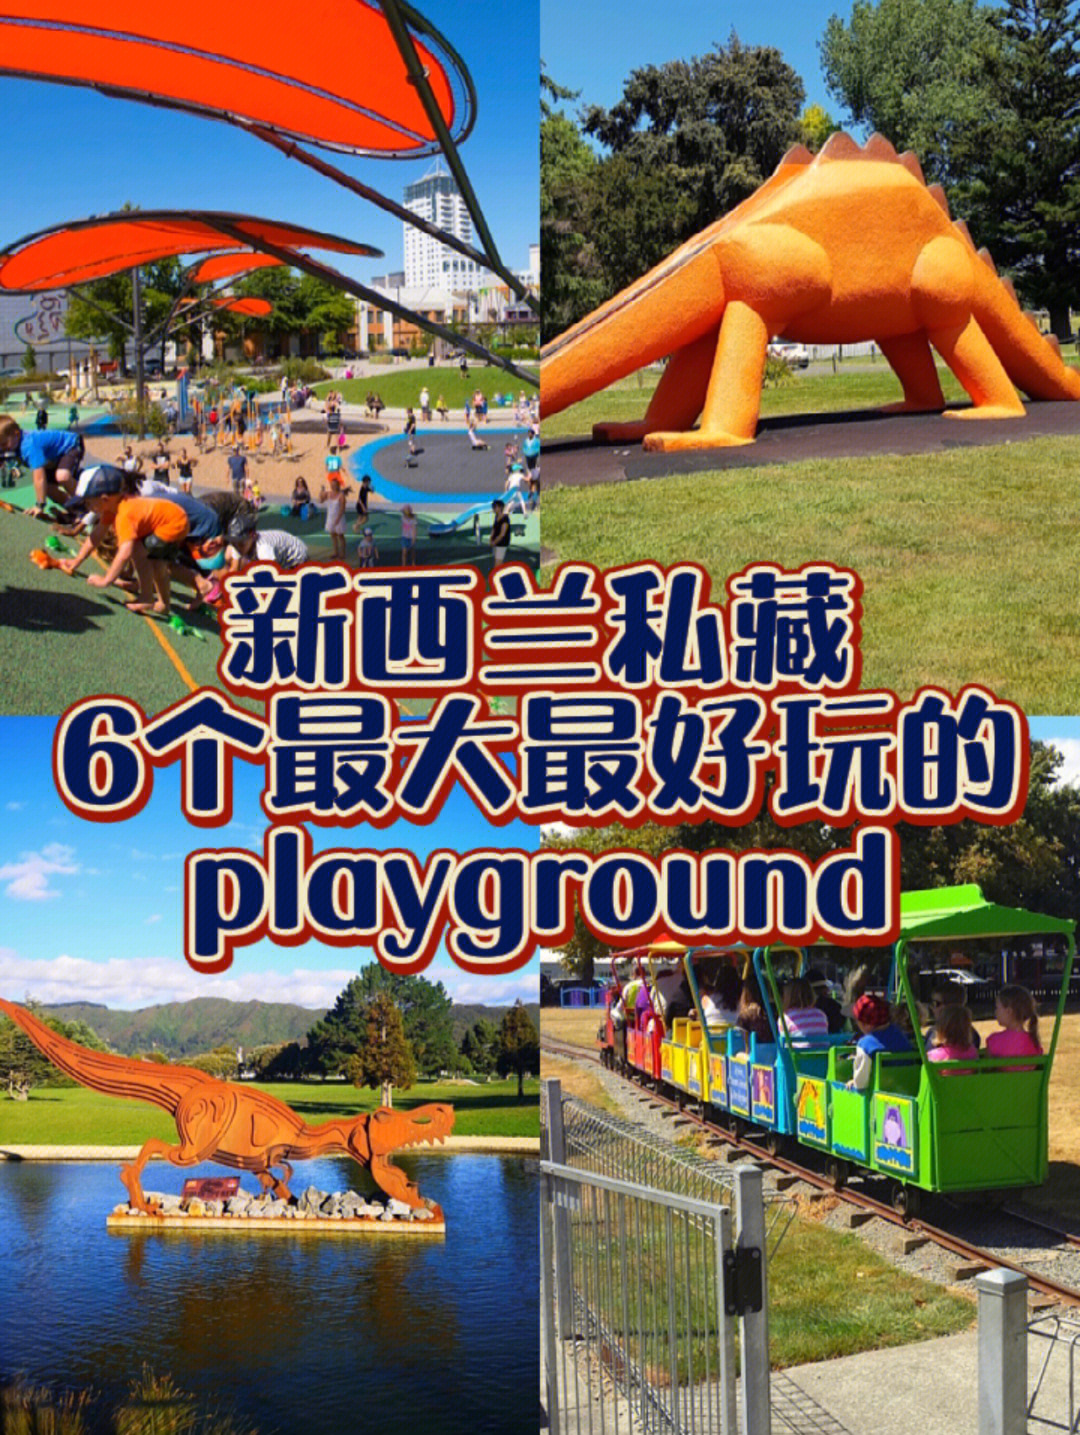 family playground新西兰最大最好的playground,位于基督城雅芳河旁边